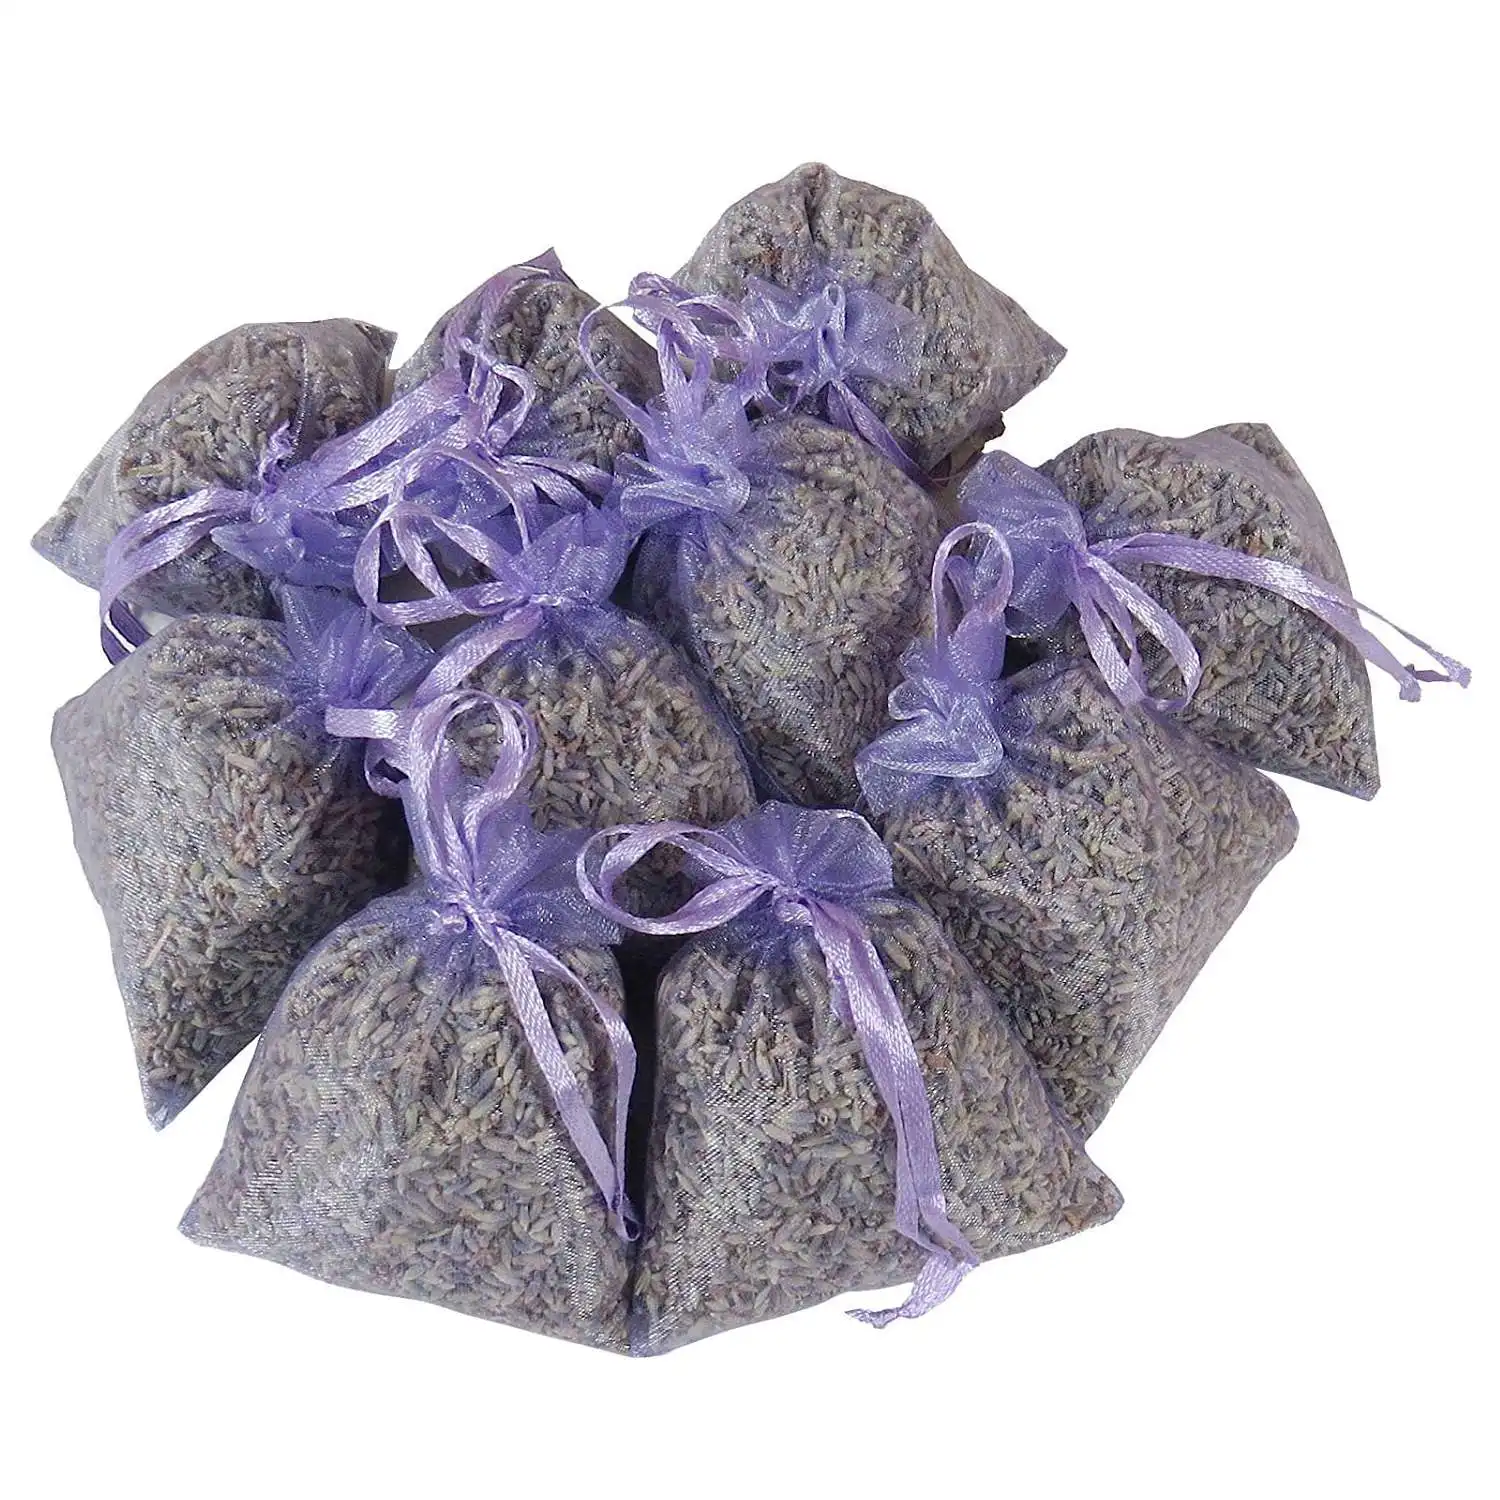 Lavendel Verpackung 15 PackungenNatürliches Deodorant,Getrocknete Blumen I7J7 